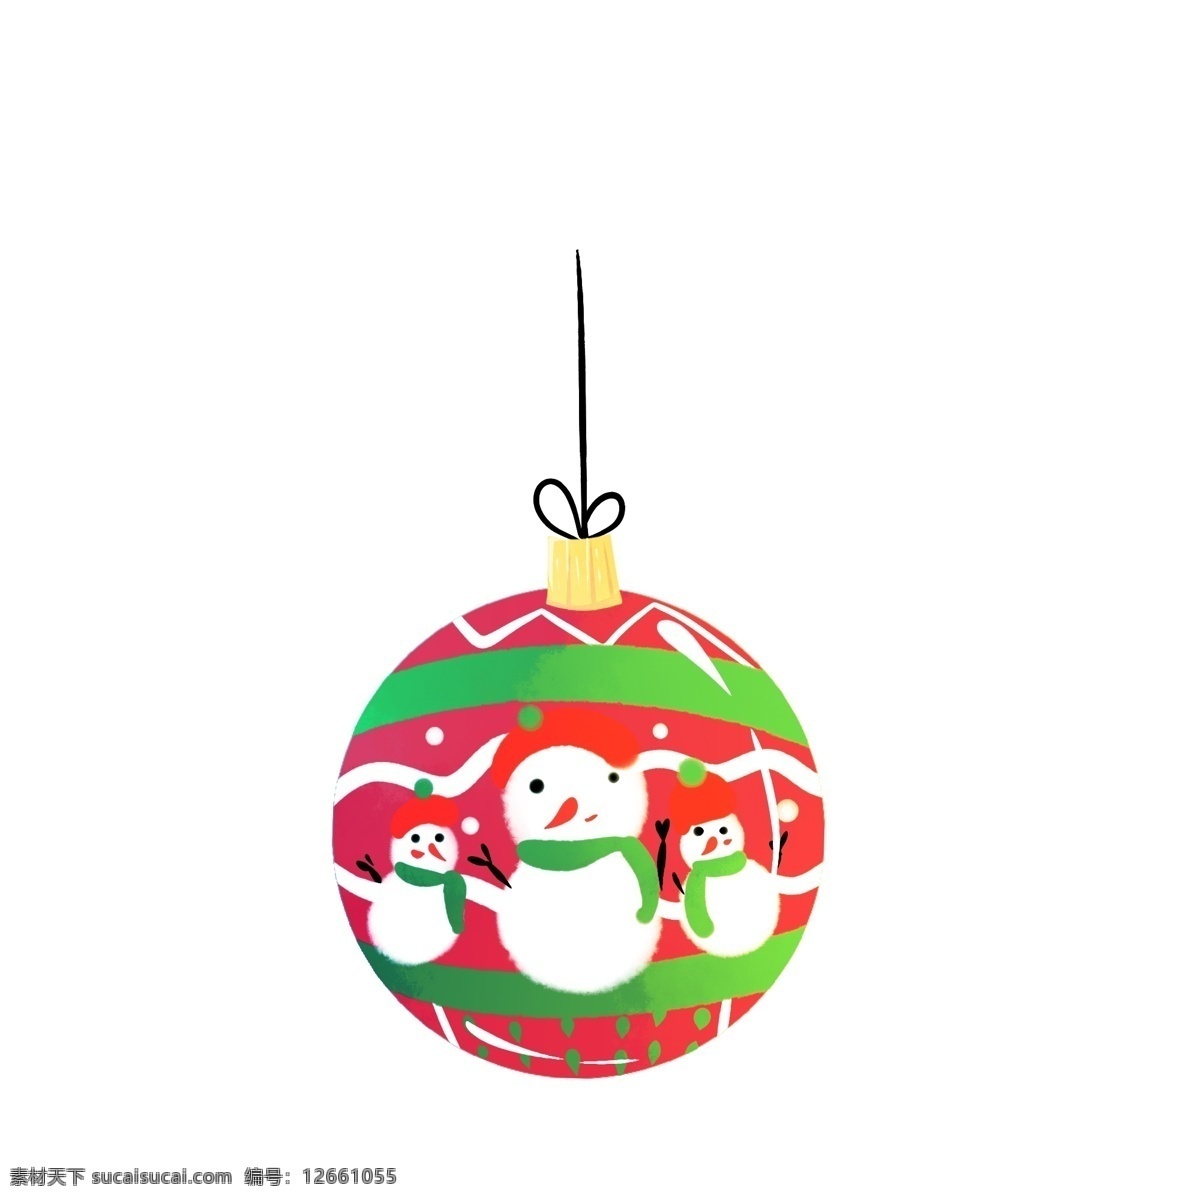 圣诞 装饰 球 彩球 可爱 卡通 装饰球